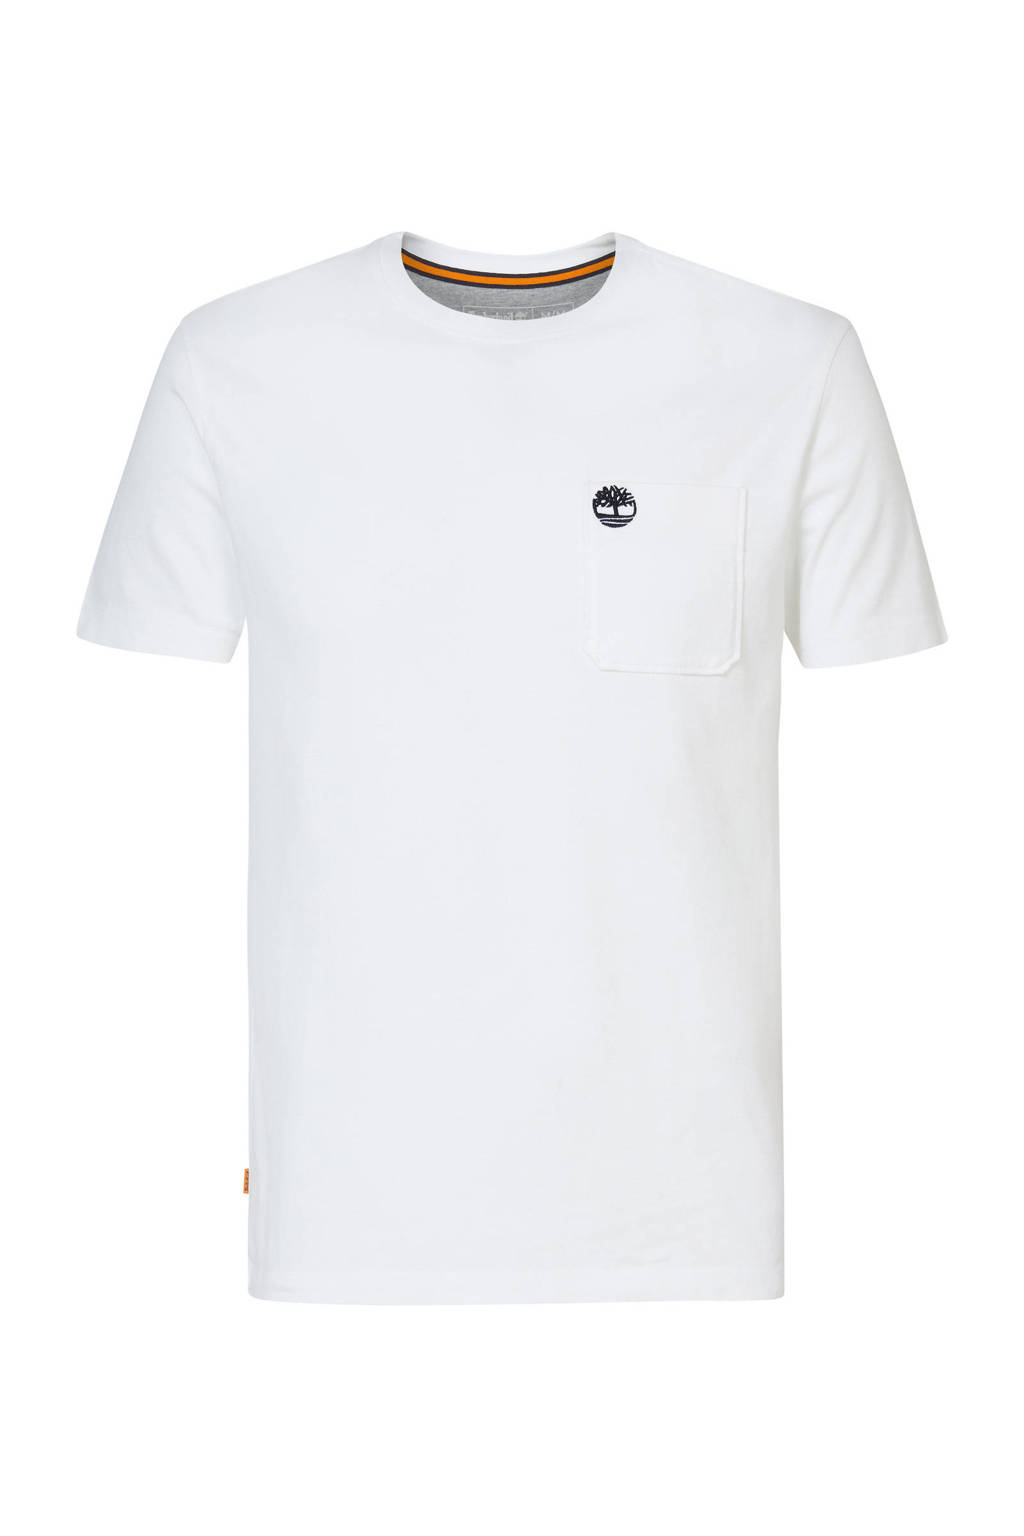 Witte heren Timberland T-shirt van biologisch katoen met logo dessin, korte mouwen en ronde hals